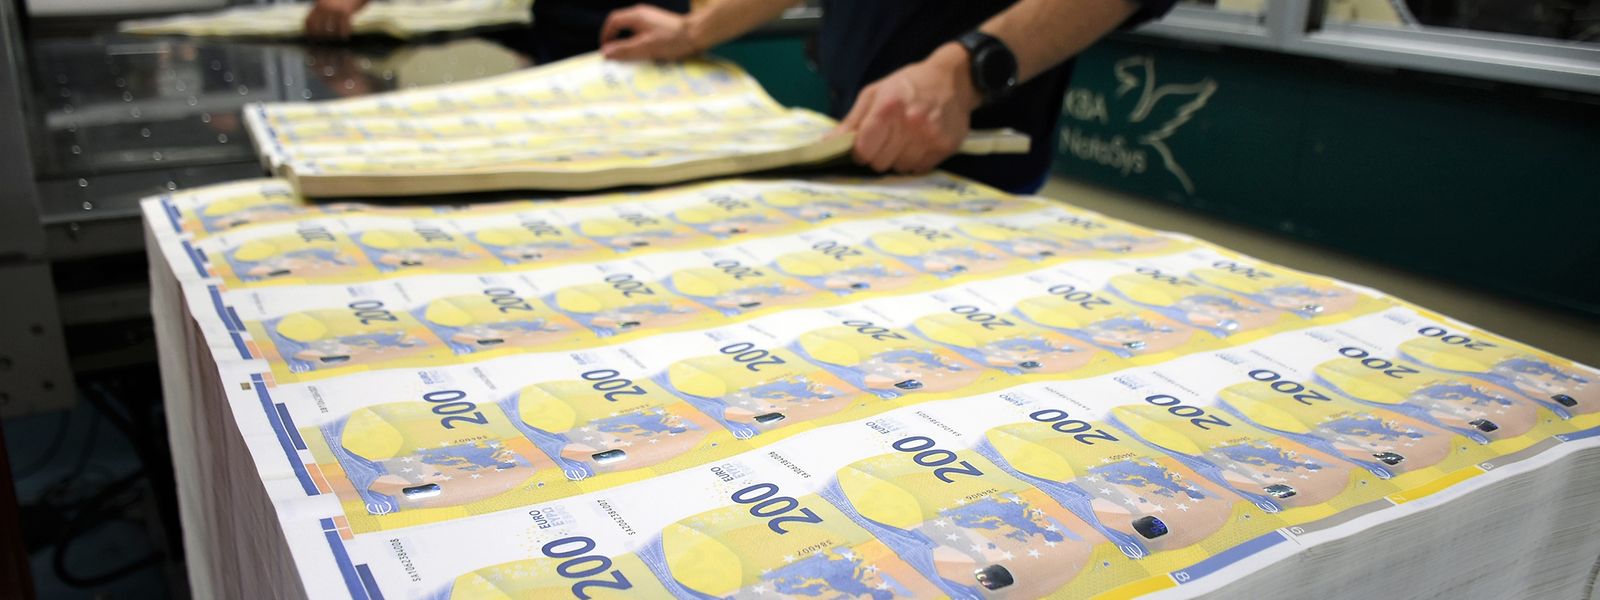 Anfang kommenden Jahres ist es so weit: Kroatien kann den Euro als Landeswährung einführen.